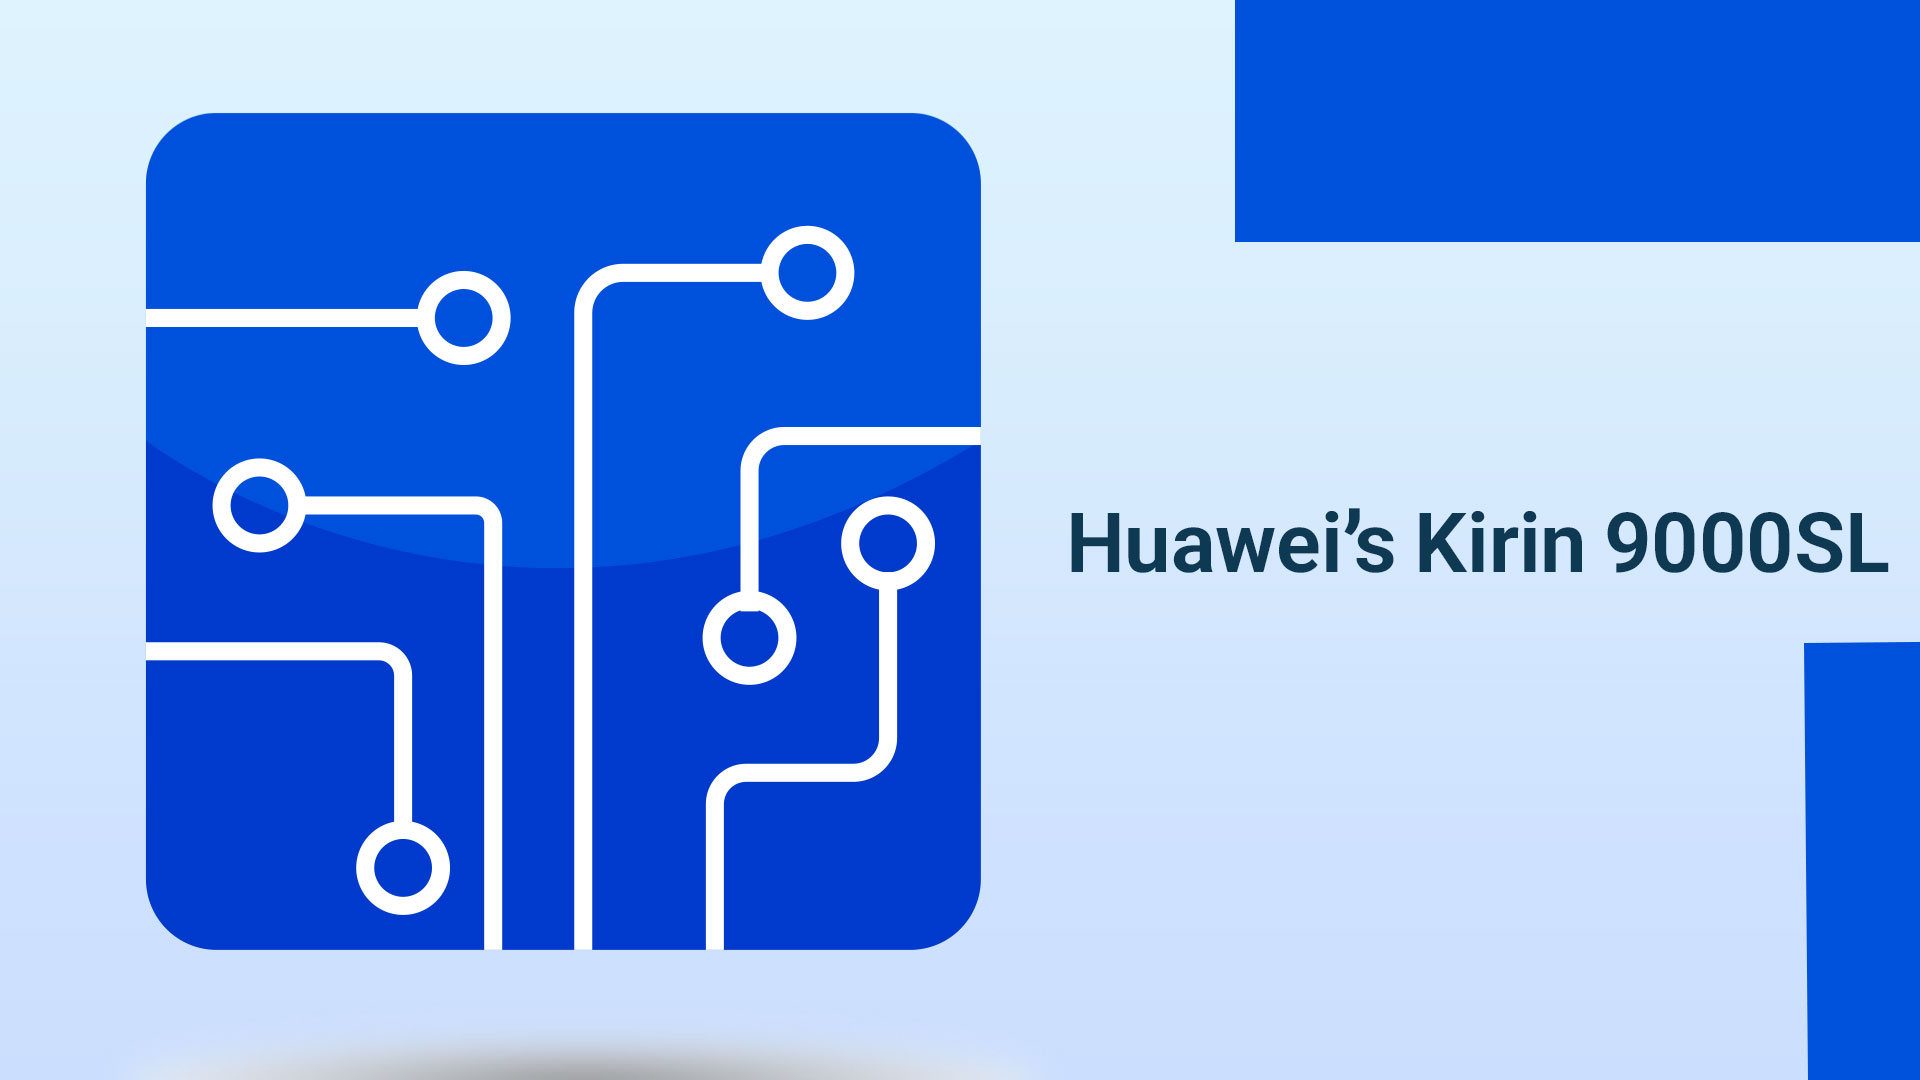 Huawei’s Kirin 9000SL